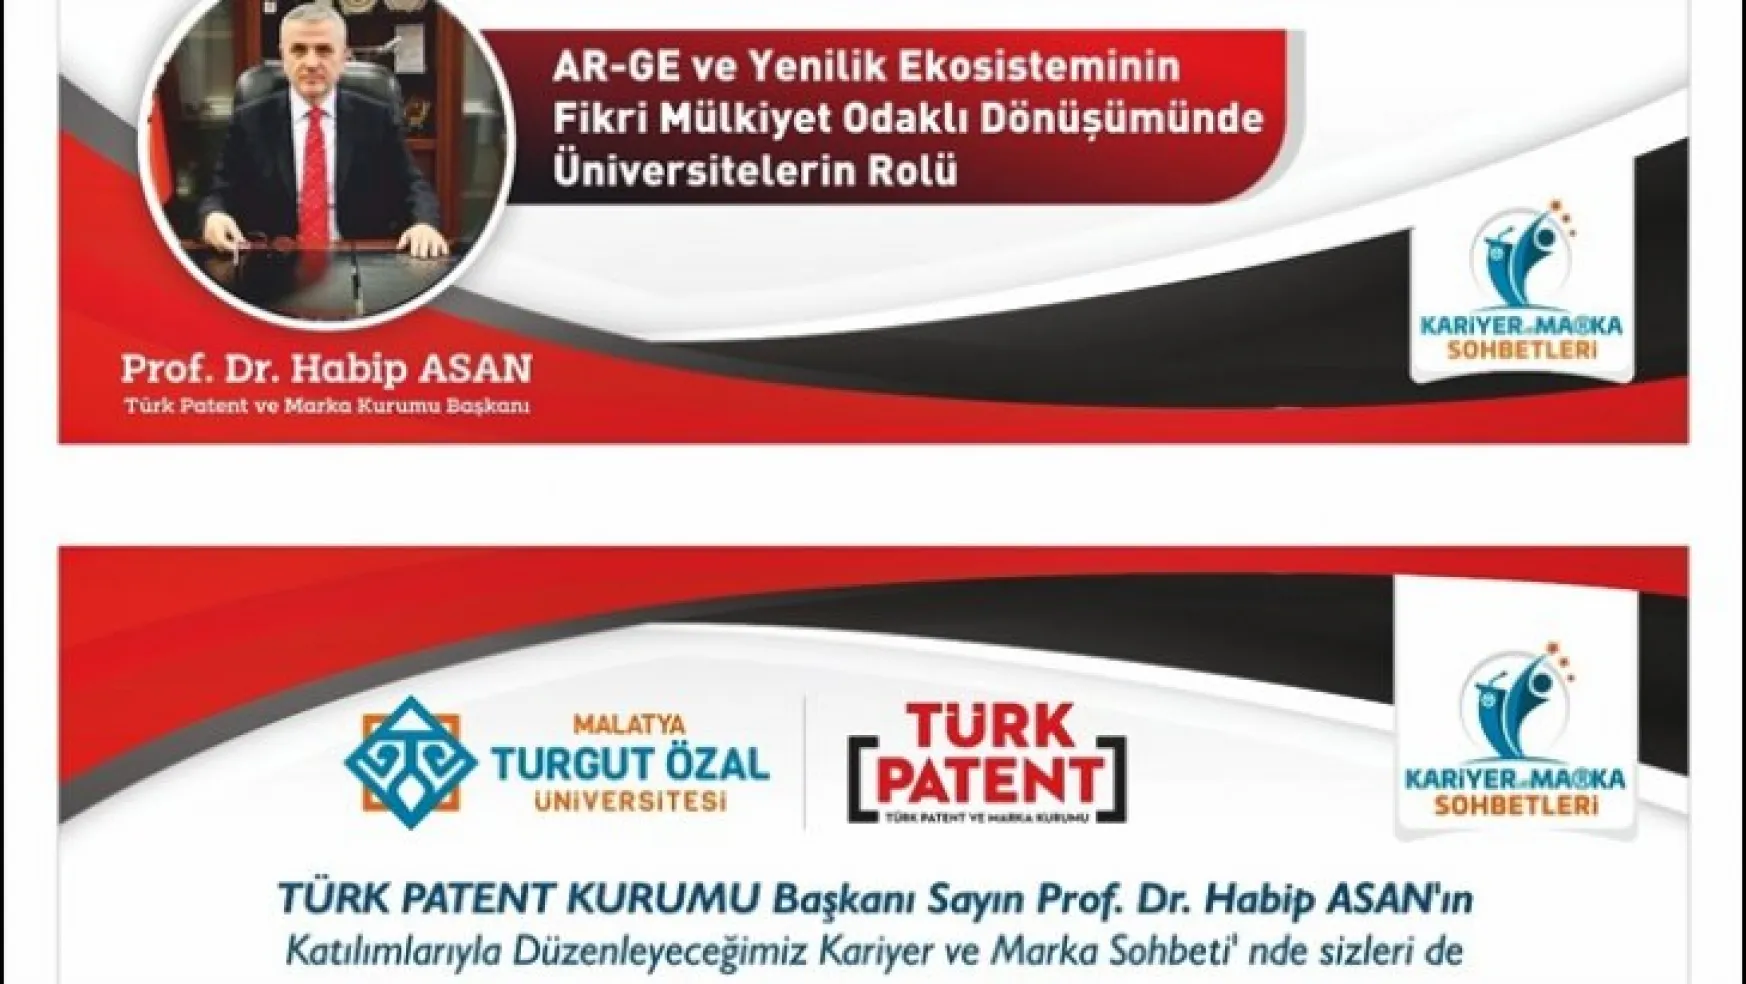 Türk Patent Kurumu Başkanı Prof. Dr. Asan MTÜ'dekonferans verecek